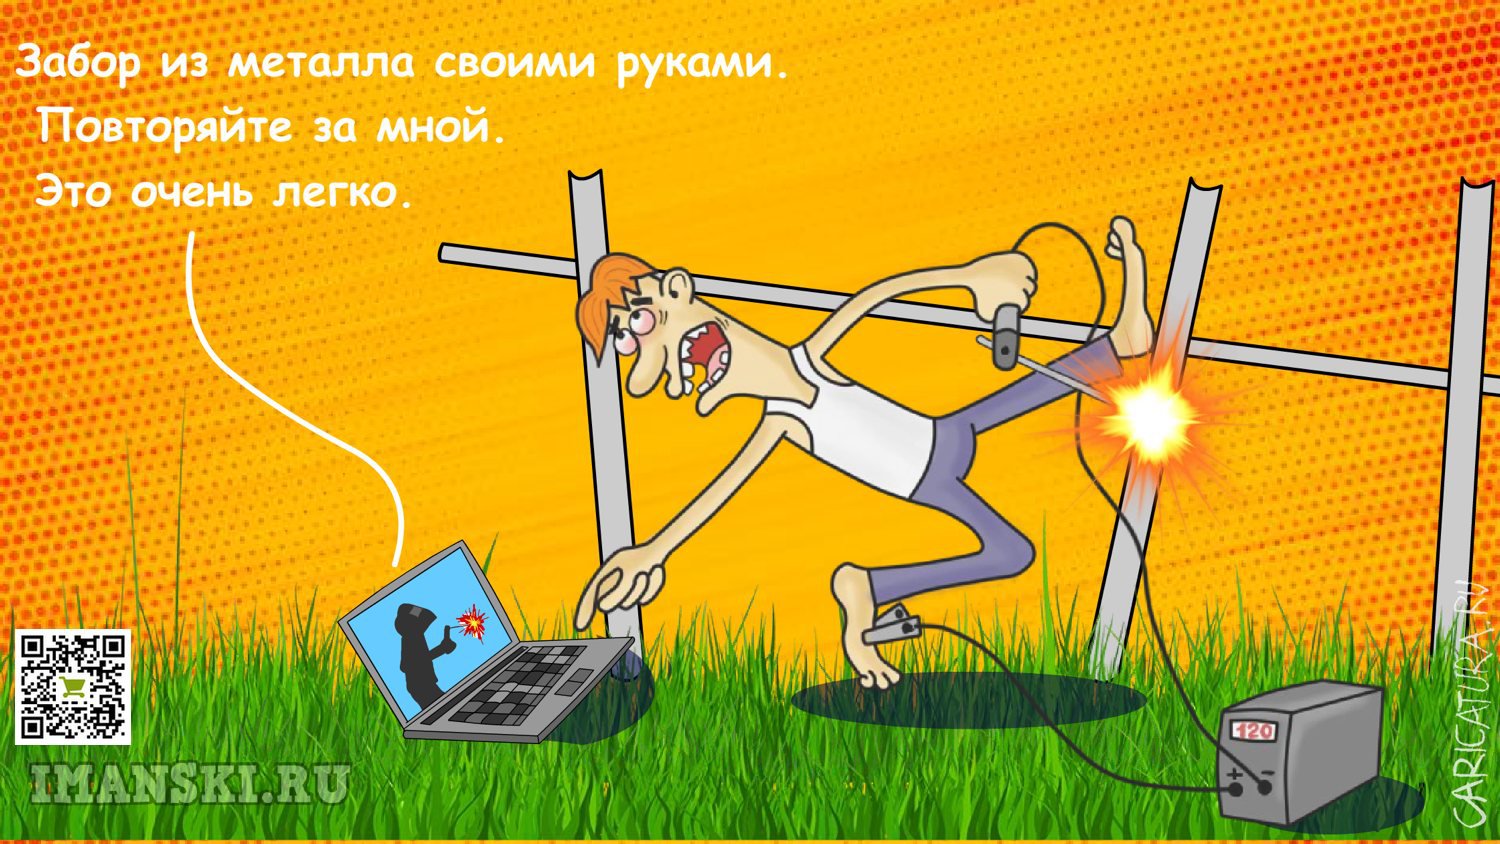 Карикатура "Забор из металла своими руками", Игорь Иманский